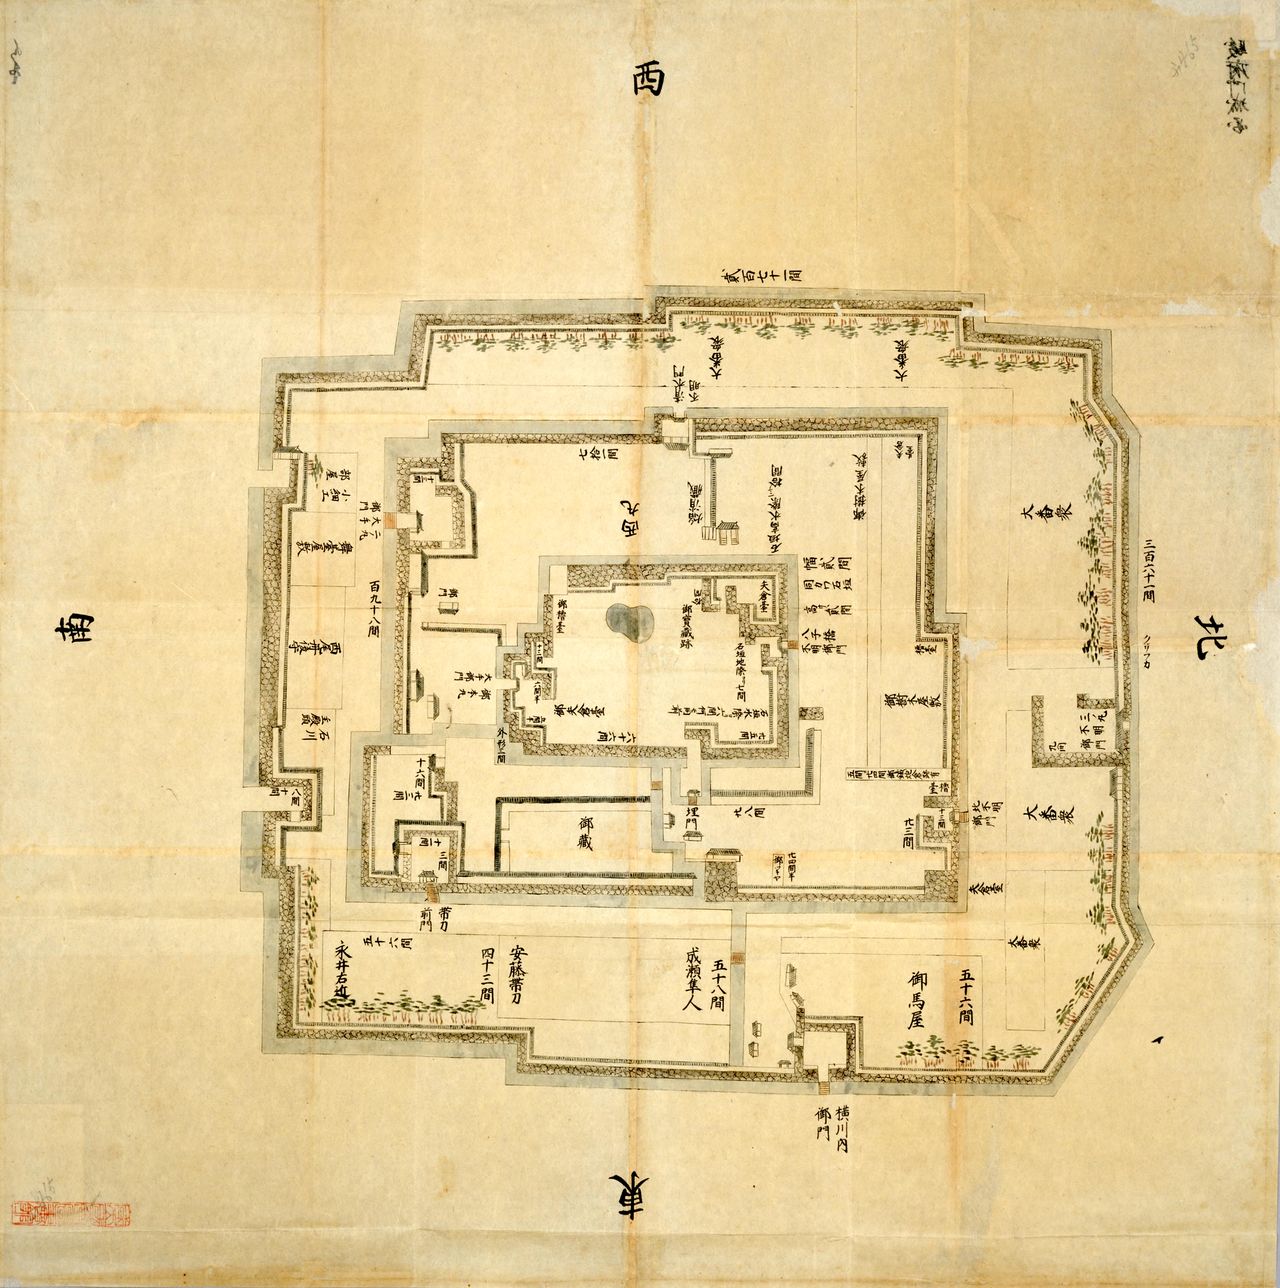 Mapa del castillo de Sunpu extraído de Nihon kojō ezu (Planos de antiguos castillos de Japón). Aunque se elaboró después de mediados del periodo Edo (1603-1868) y es distinto del castillo que ocupaba Ieyasu, el plano muestra que contaba con una gran ciudadela en cuyo centro se erigía el torreón. (Biblioteca de la Dieta Nacional).